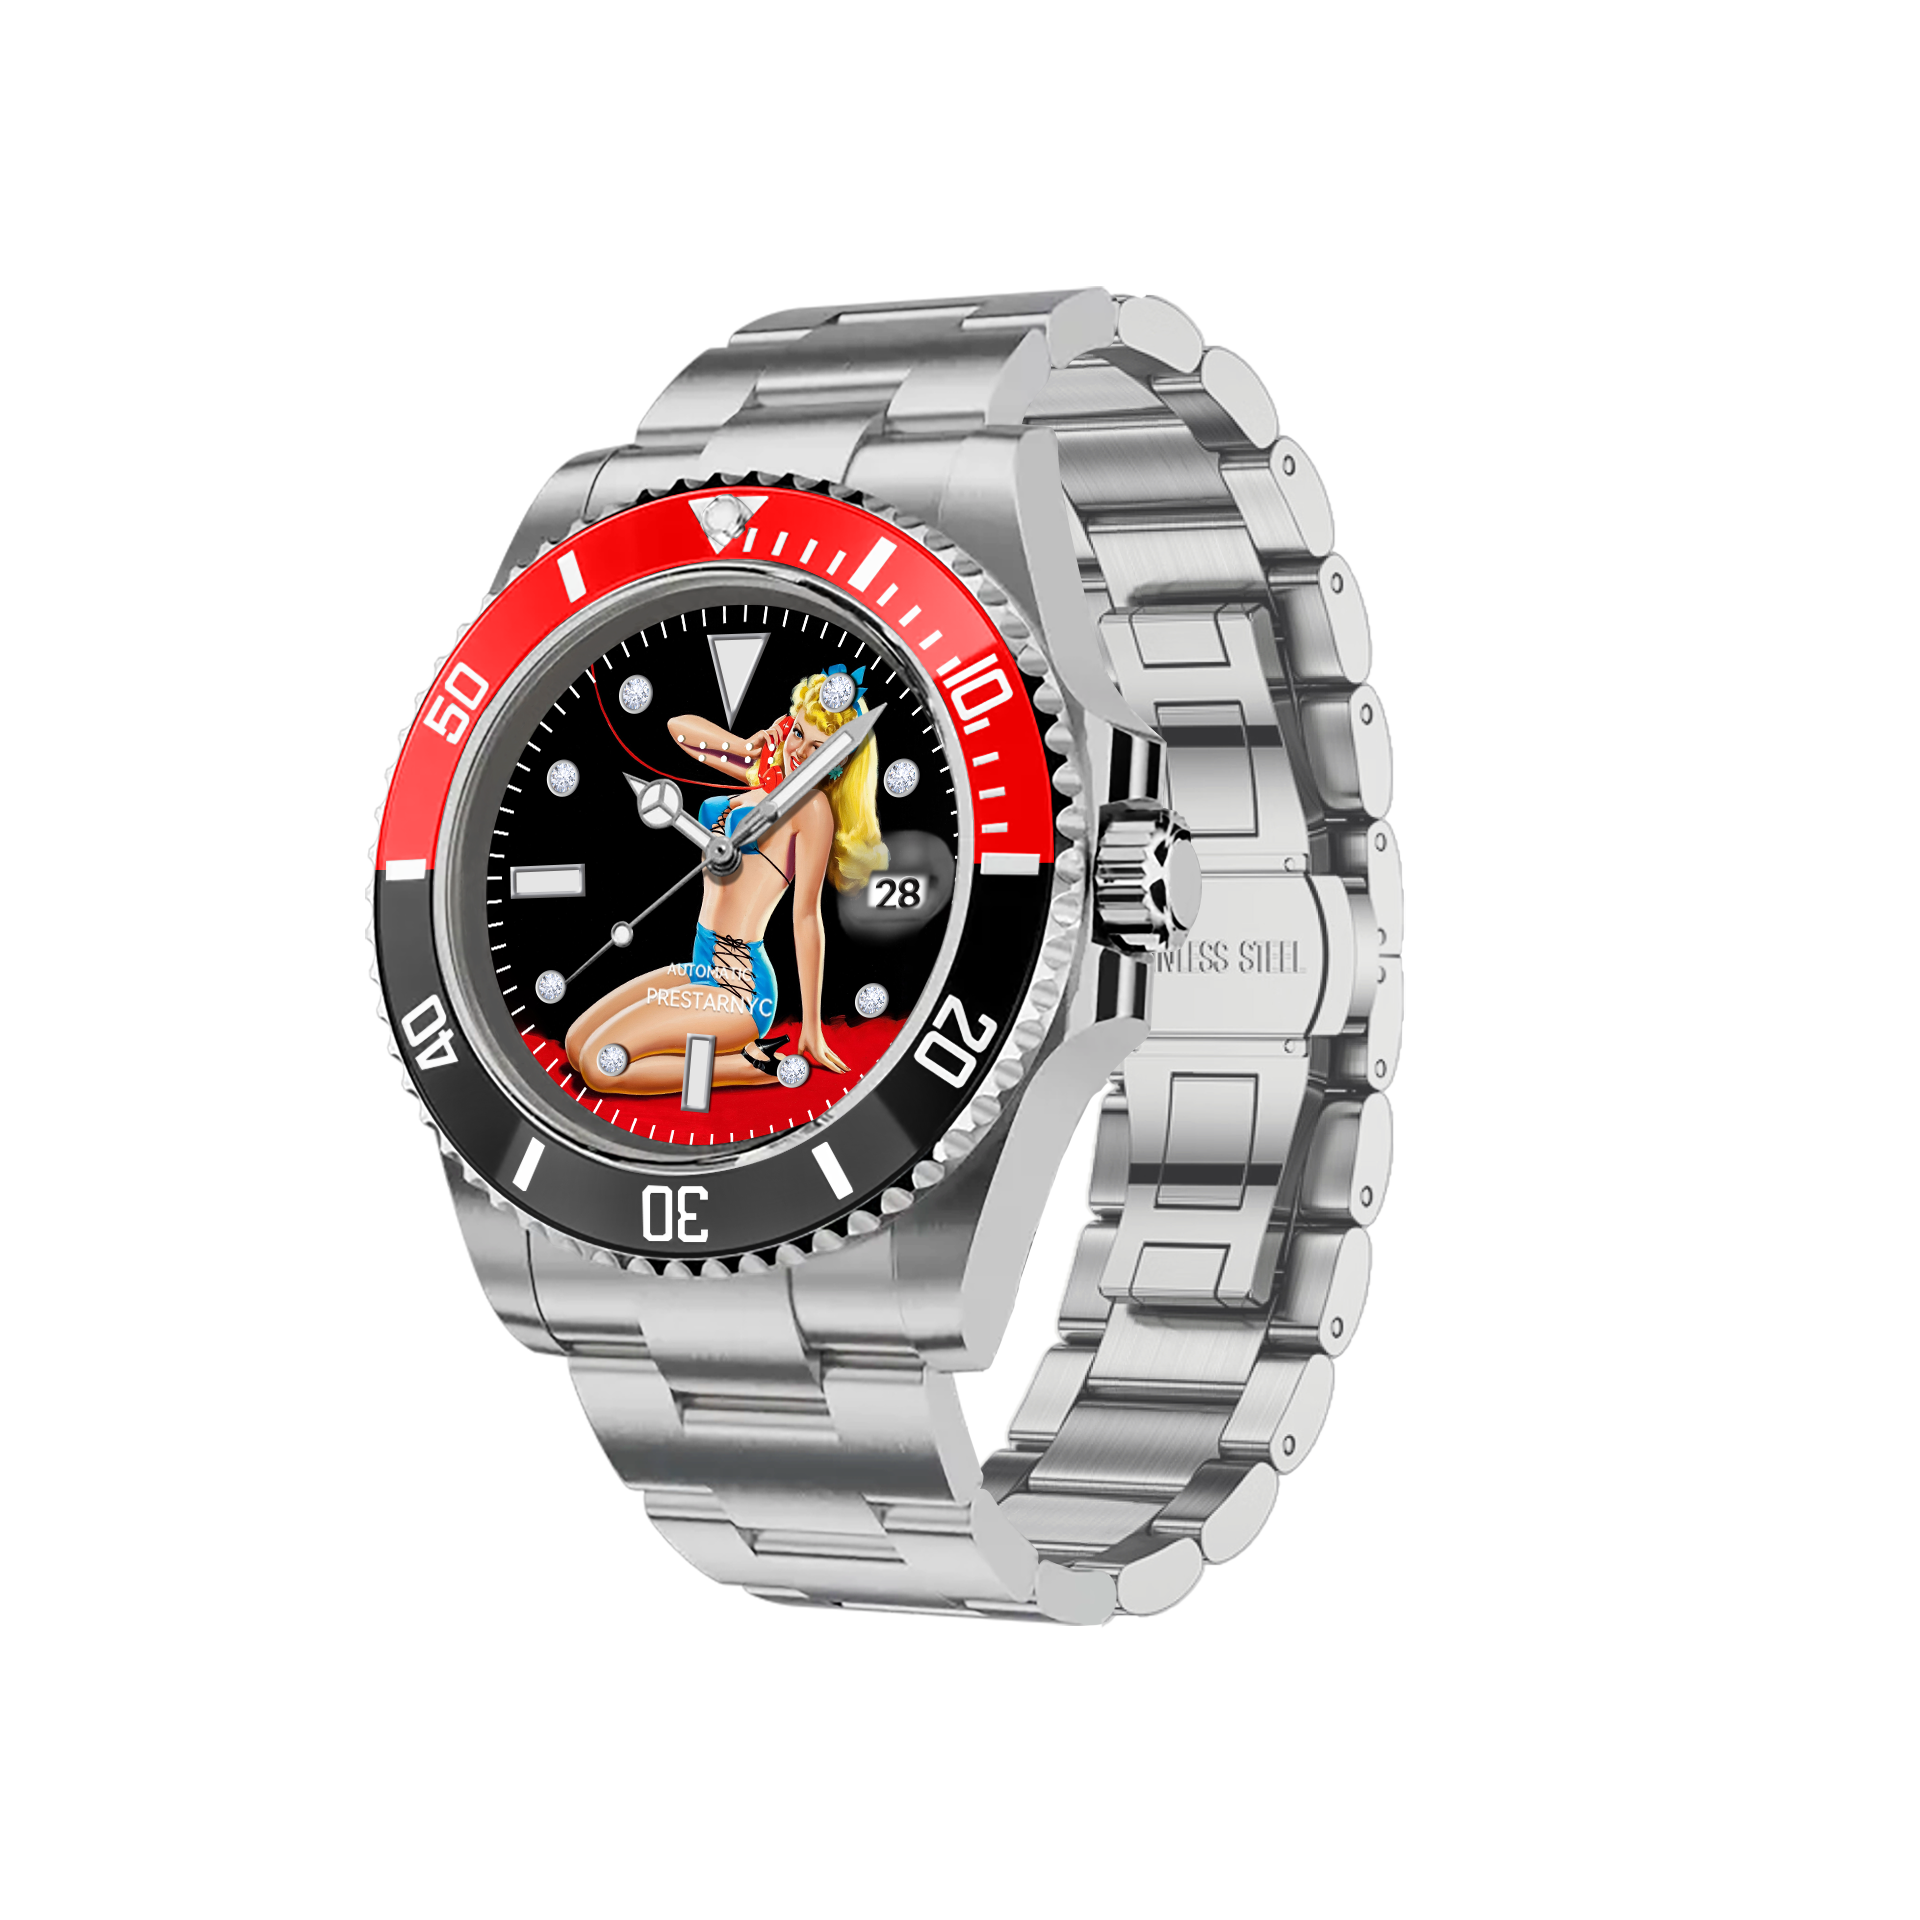 Prestar NYC Aquaman Initial Mechanical Watch (Scarlet Temptation)